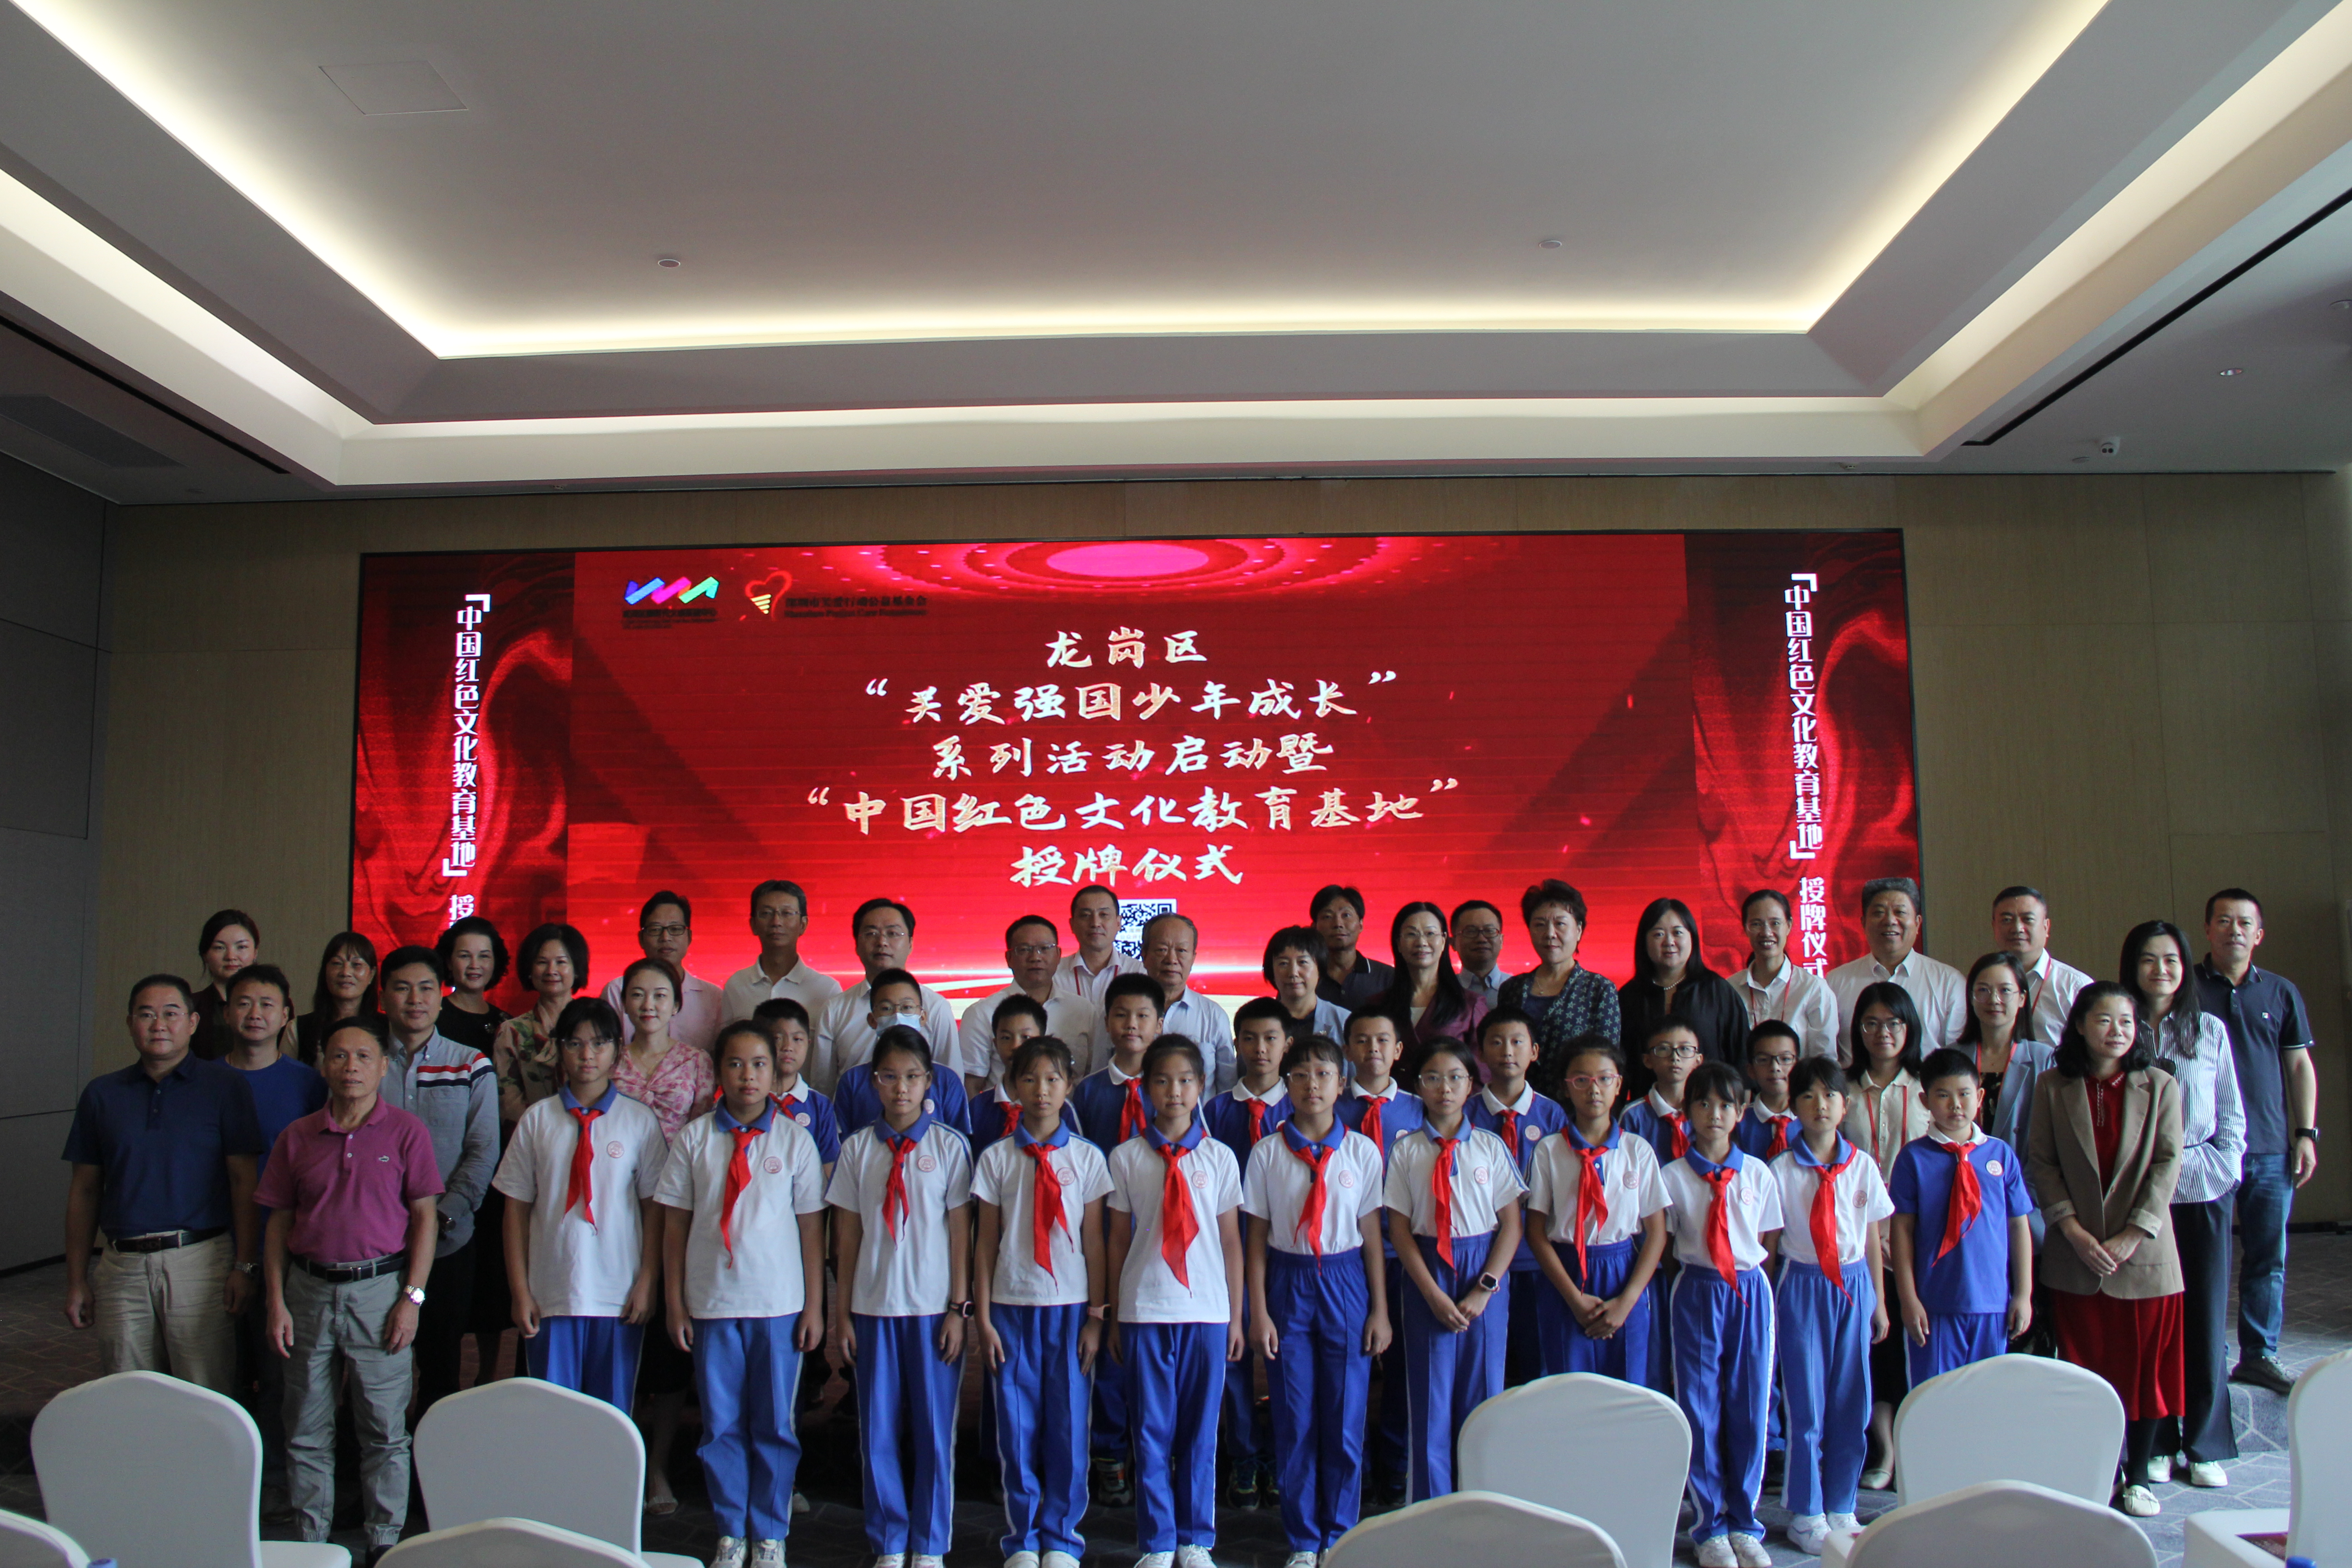 龙岗区启动“关爱强国少年成长”系列活动并授牌“中国红色文化教育基地”